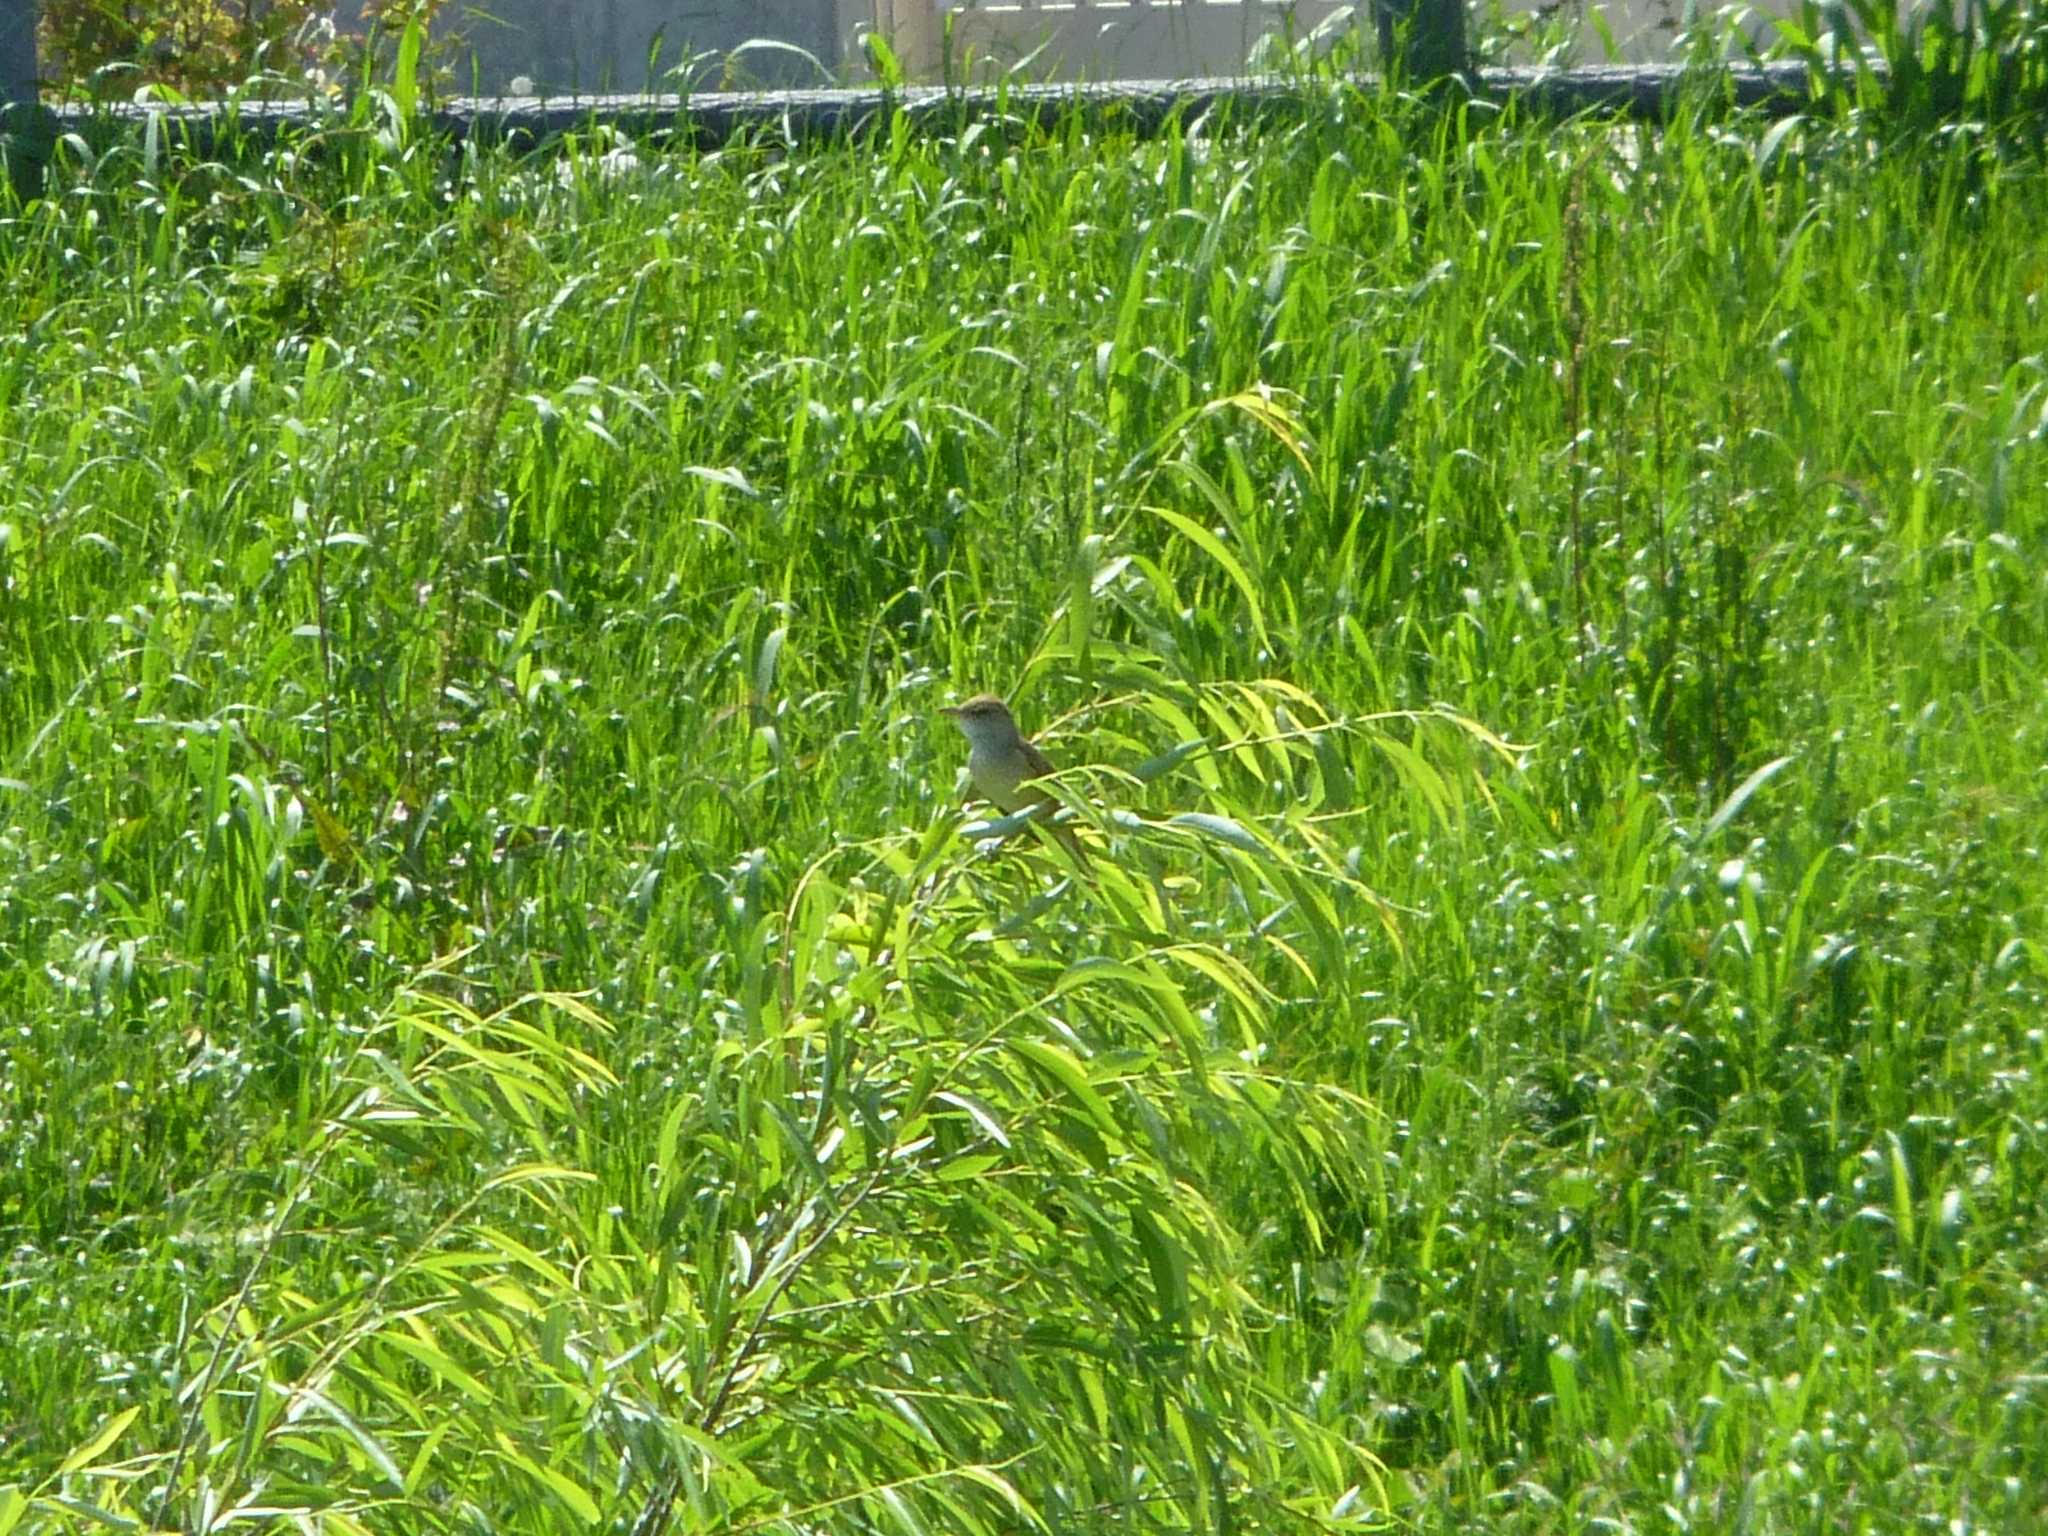 Oriental Reed Warbler